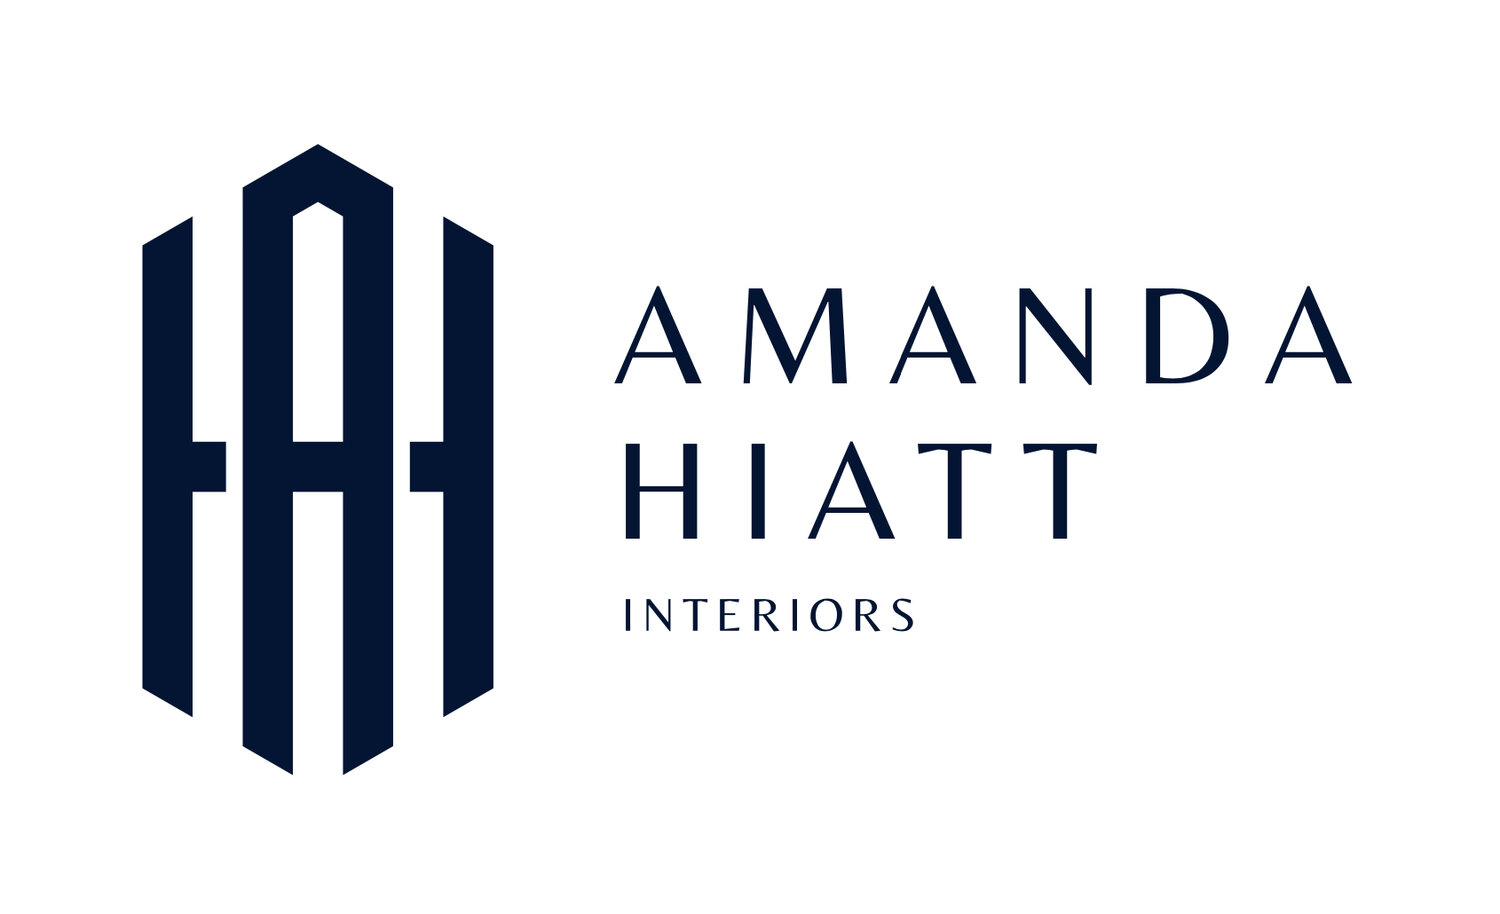 Amanda Hiatt Interiors